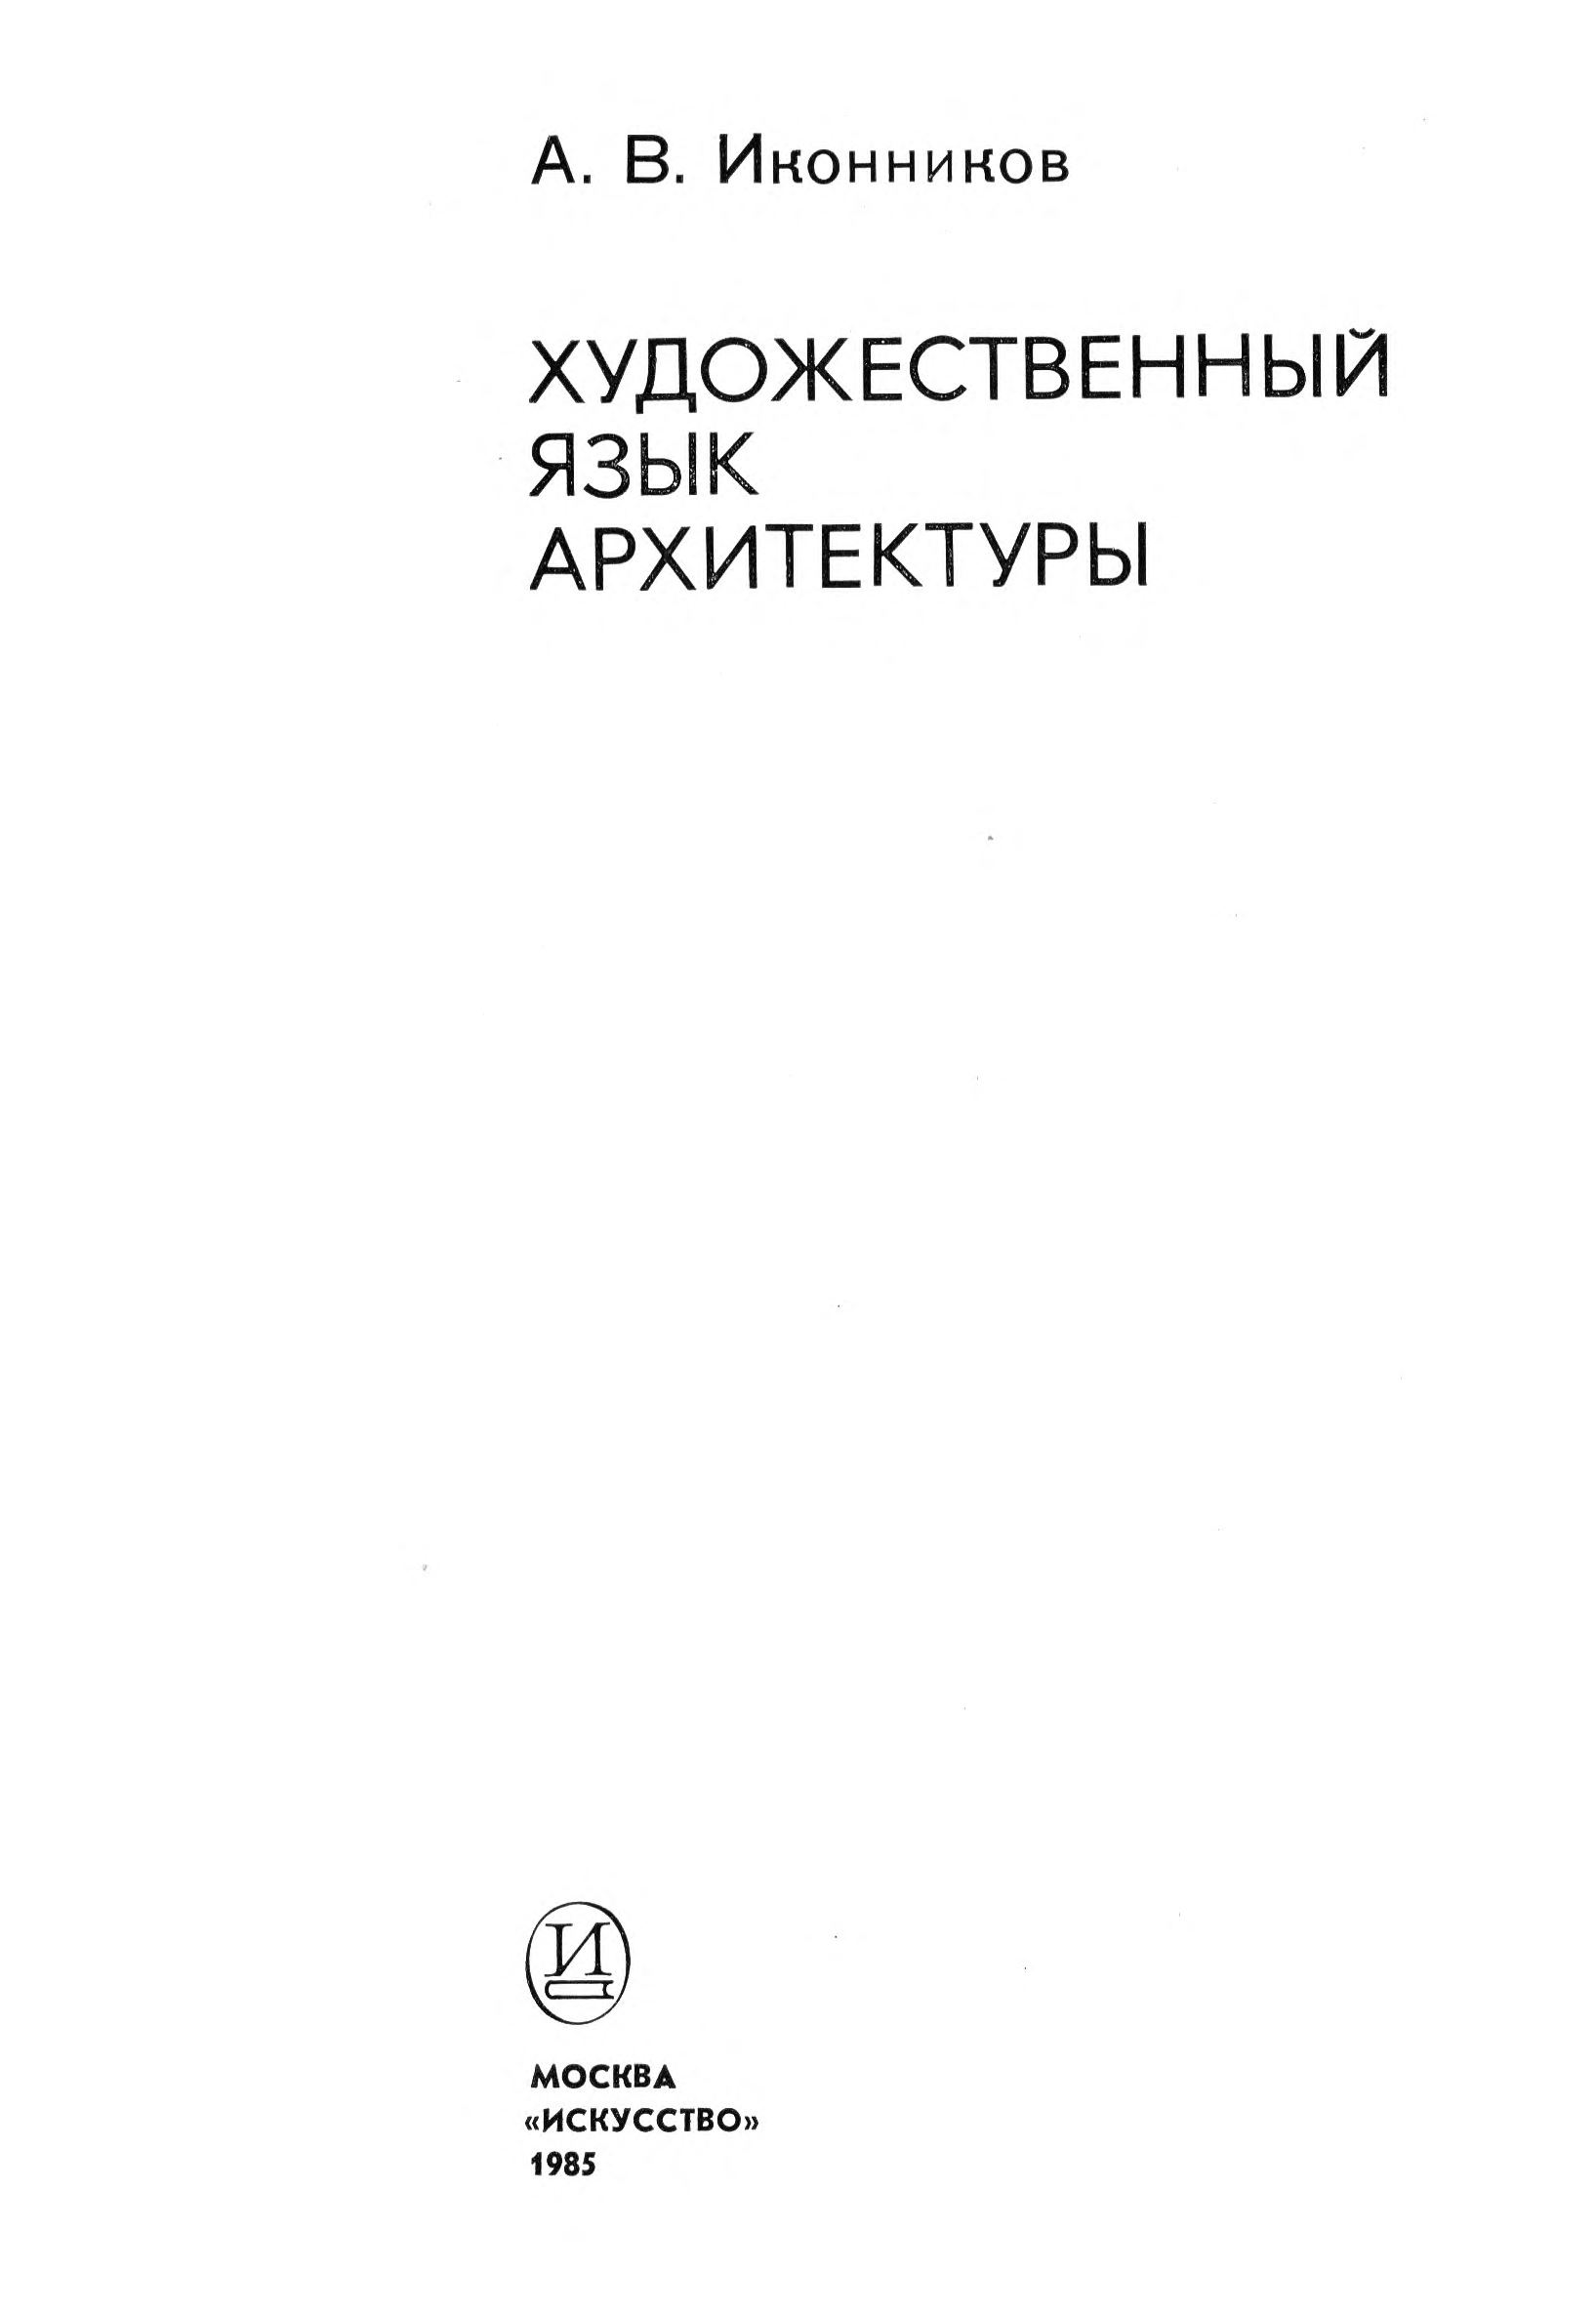 Художественный язык архитектуры / А. В. Иконников. — Москва : Искусство, 1985